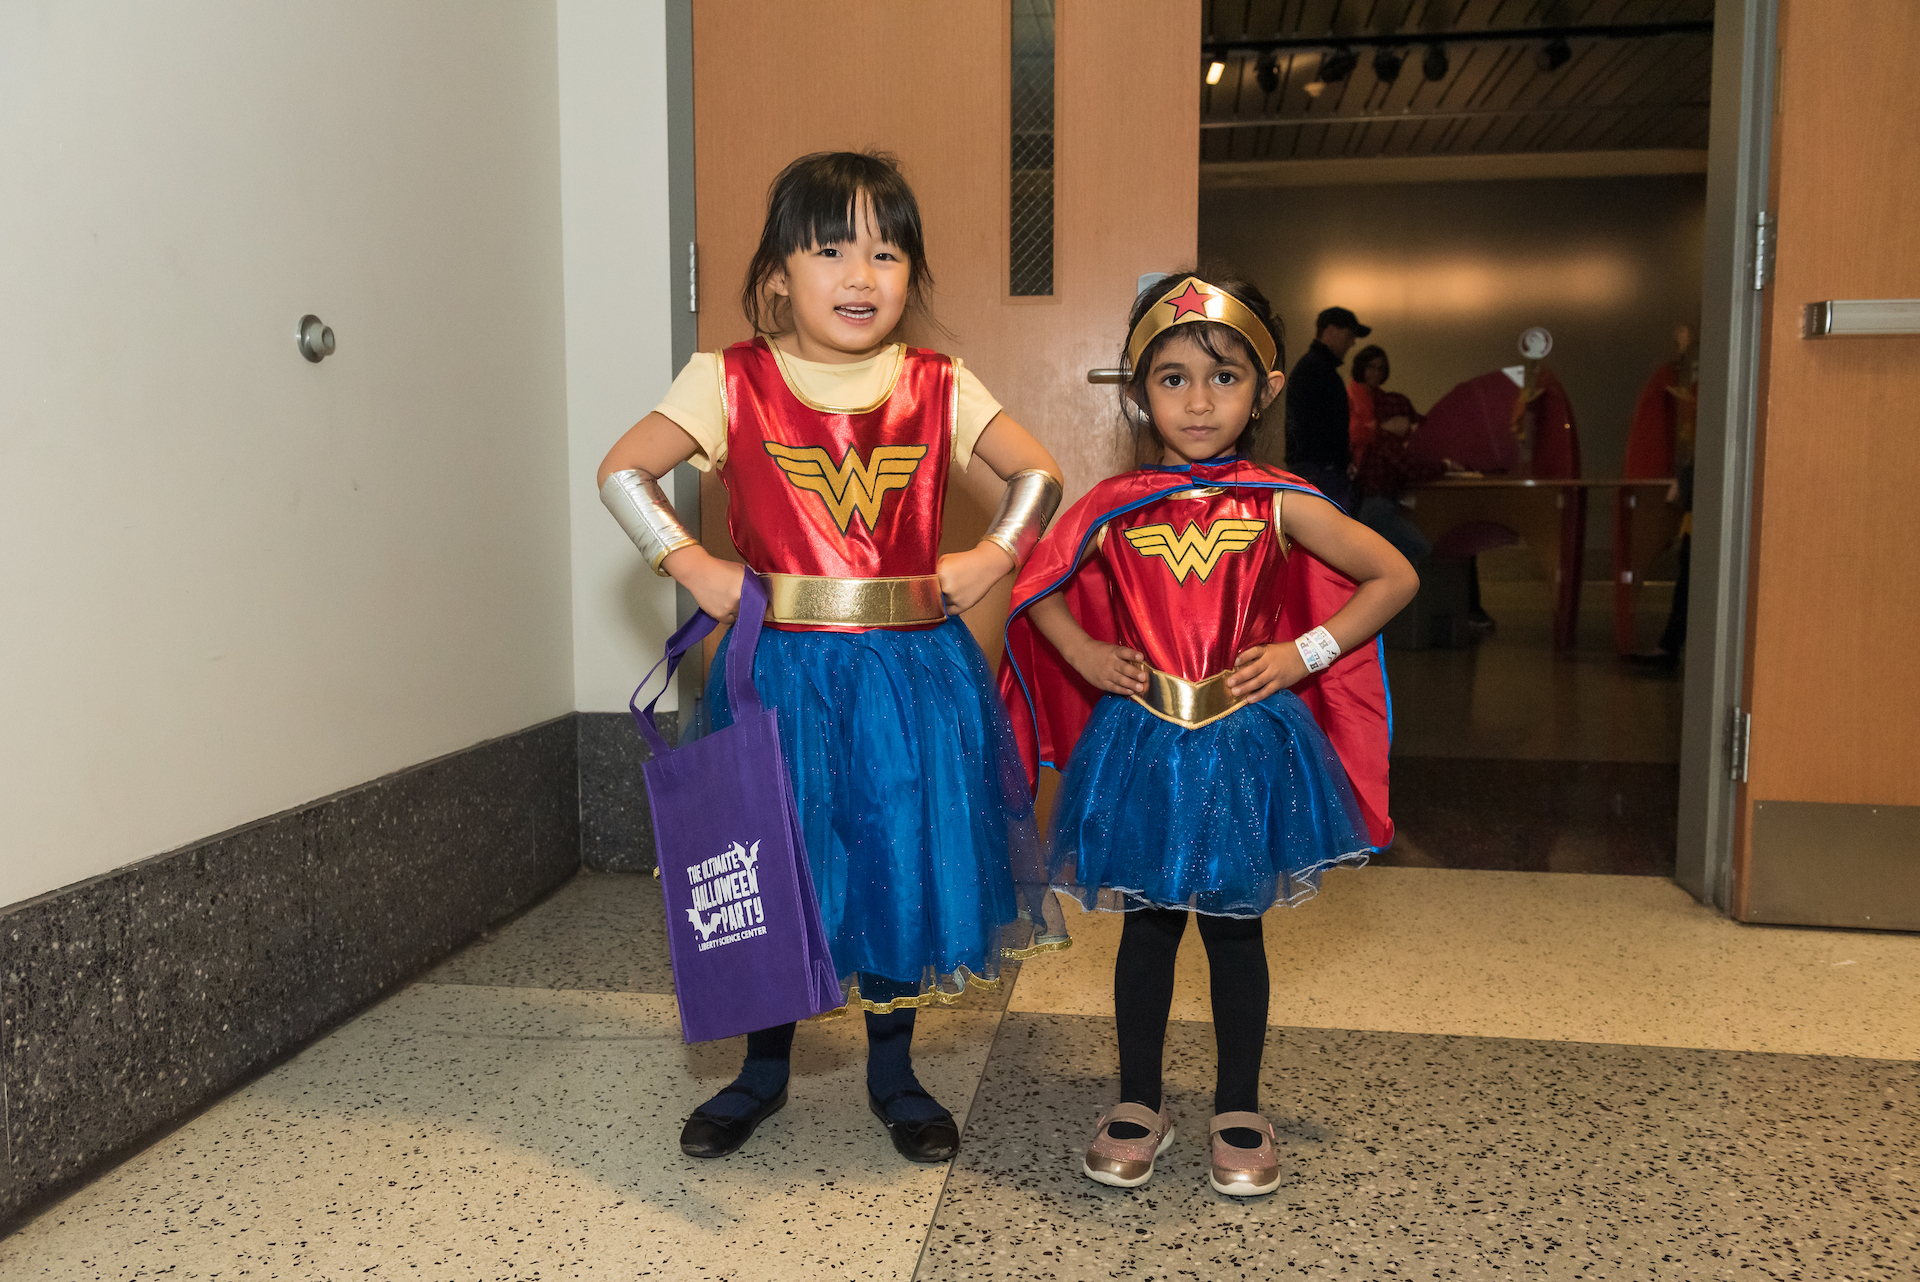 Kids in Wonder Woman costumes